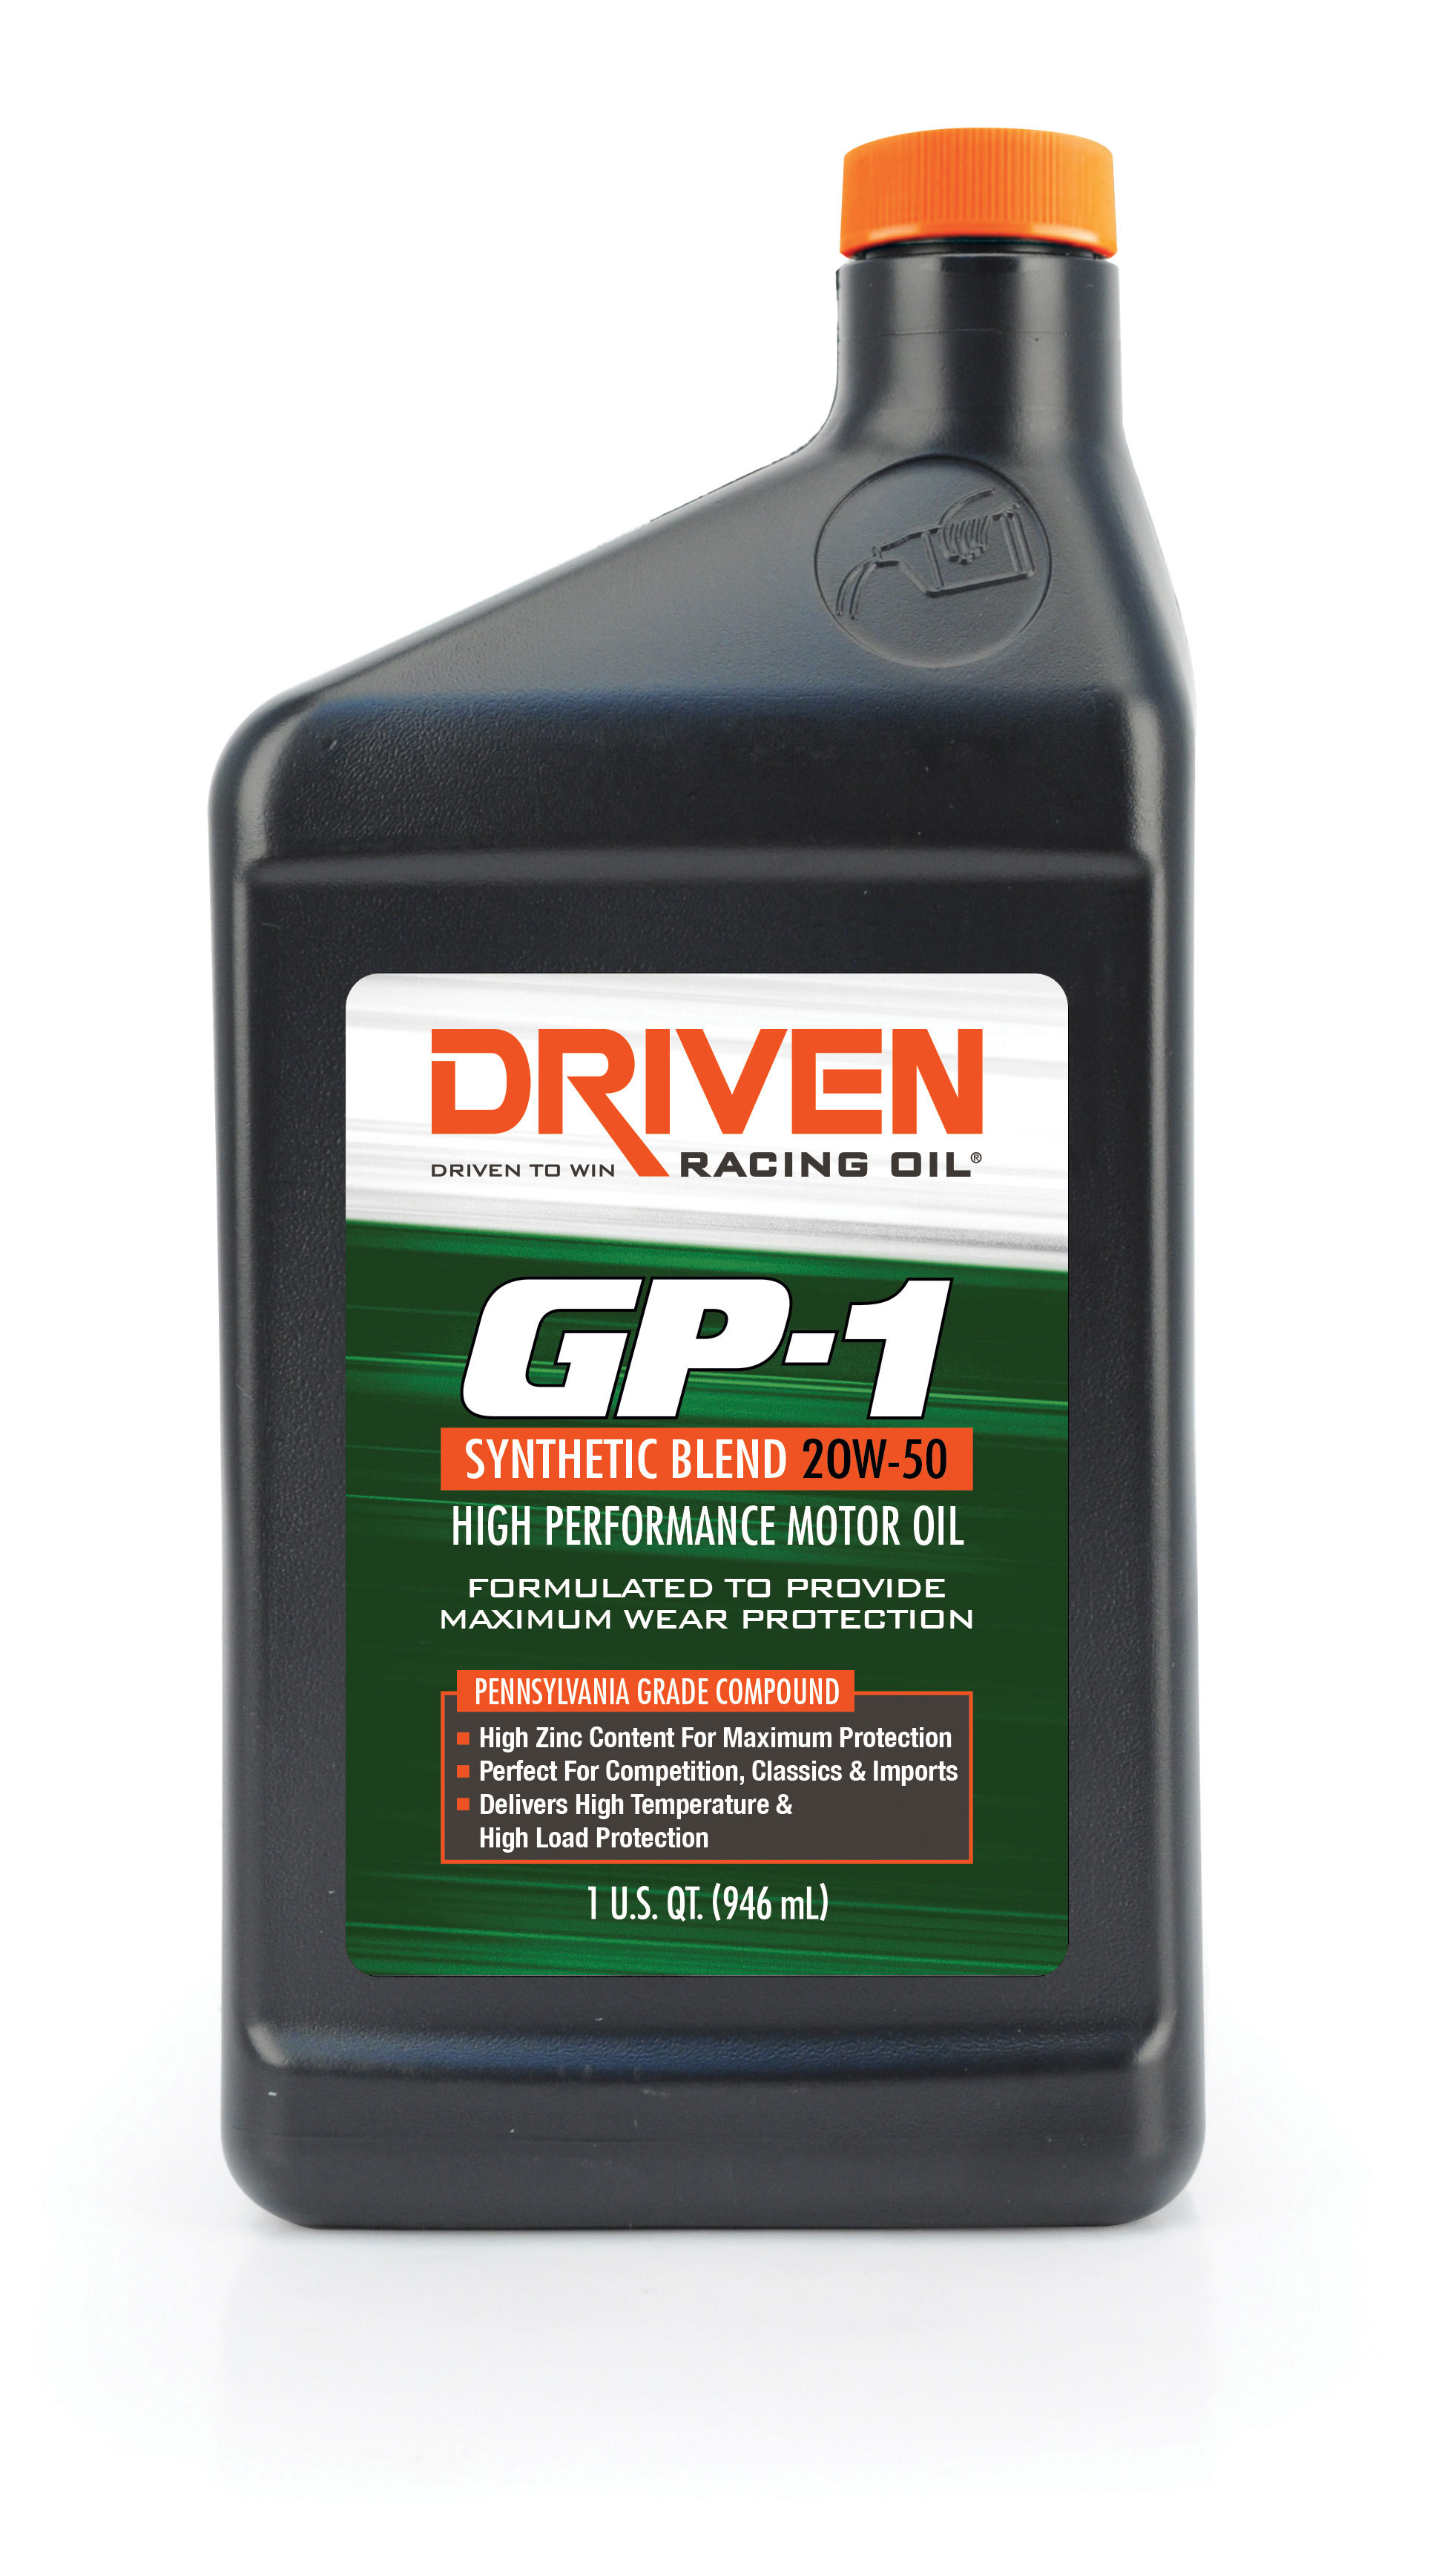 Driven Oil GP1 20W-50 Synthetic Blend Racing Oil - 1 Quart Bottle JGP19506